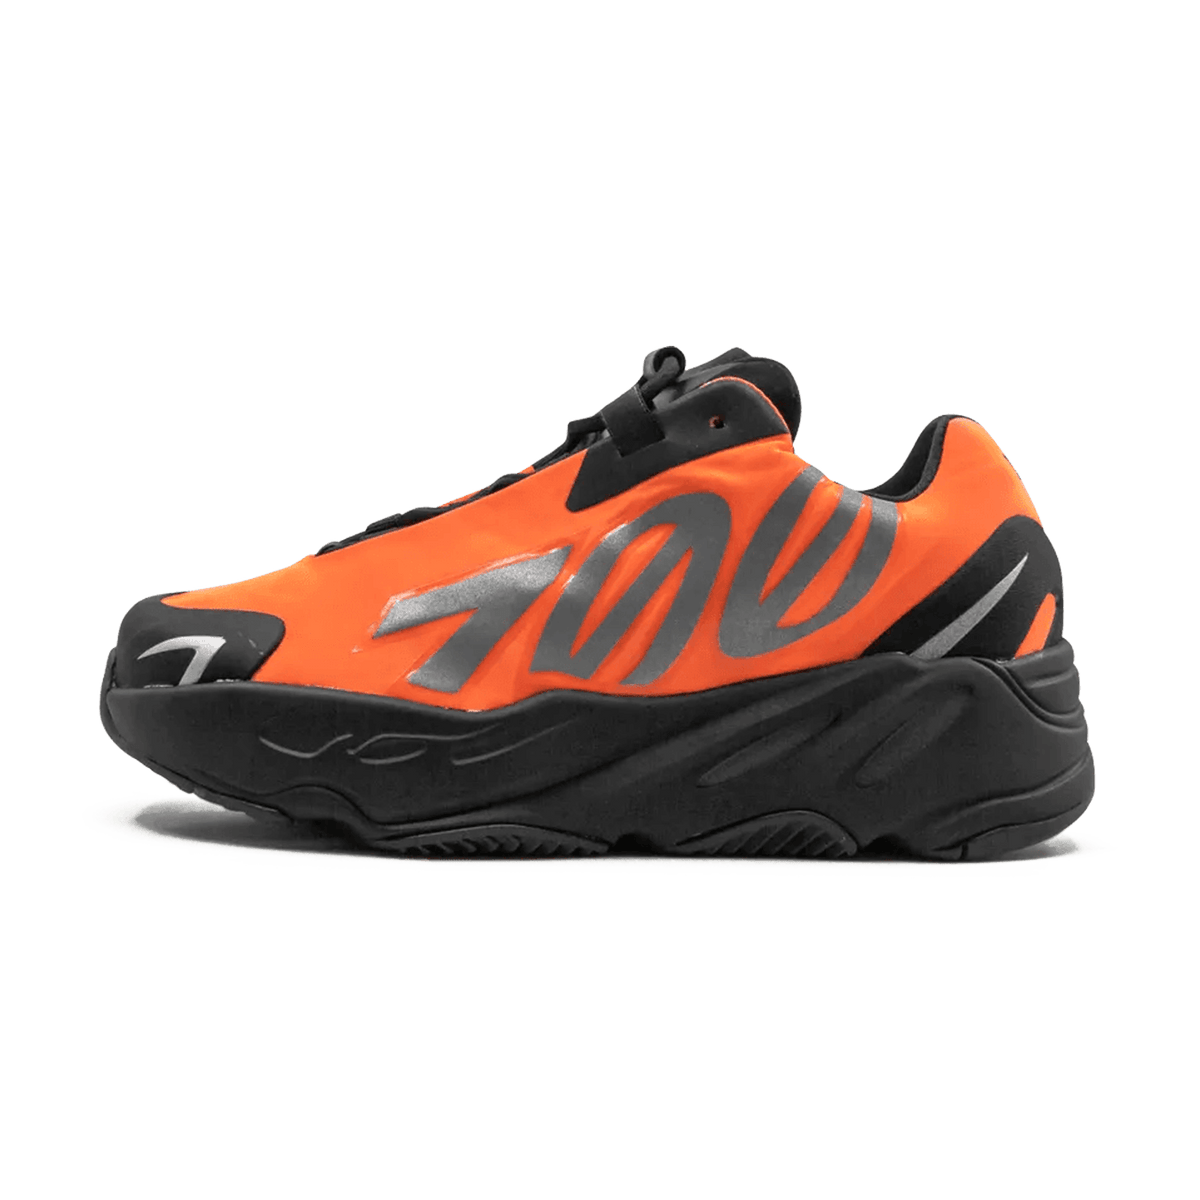 adidas yeezy boost 700 mnvn orange kids FX3354 1